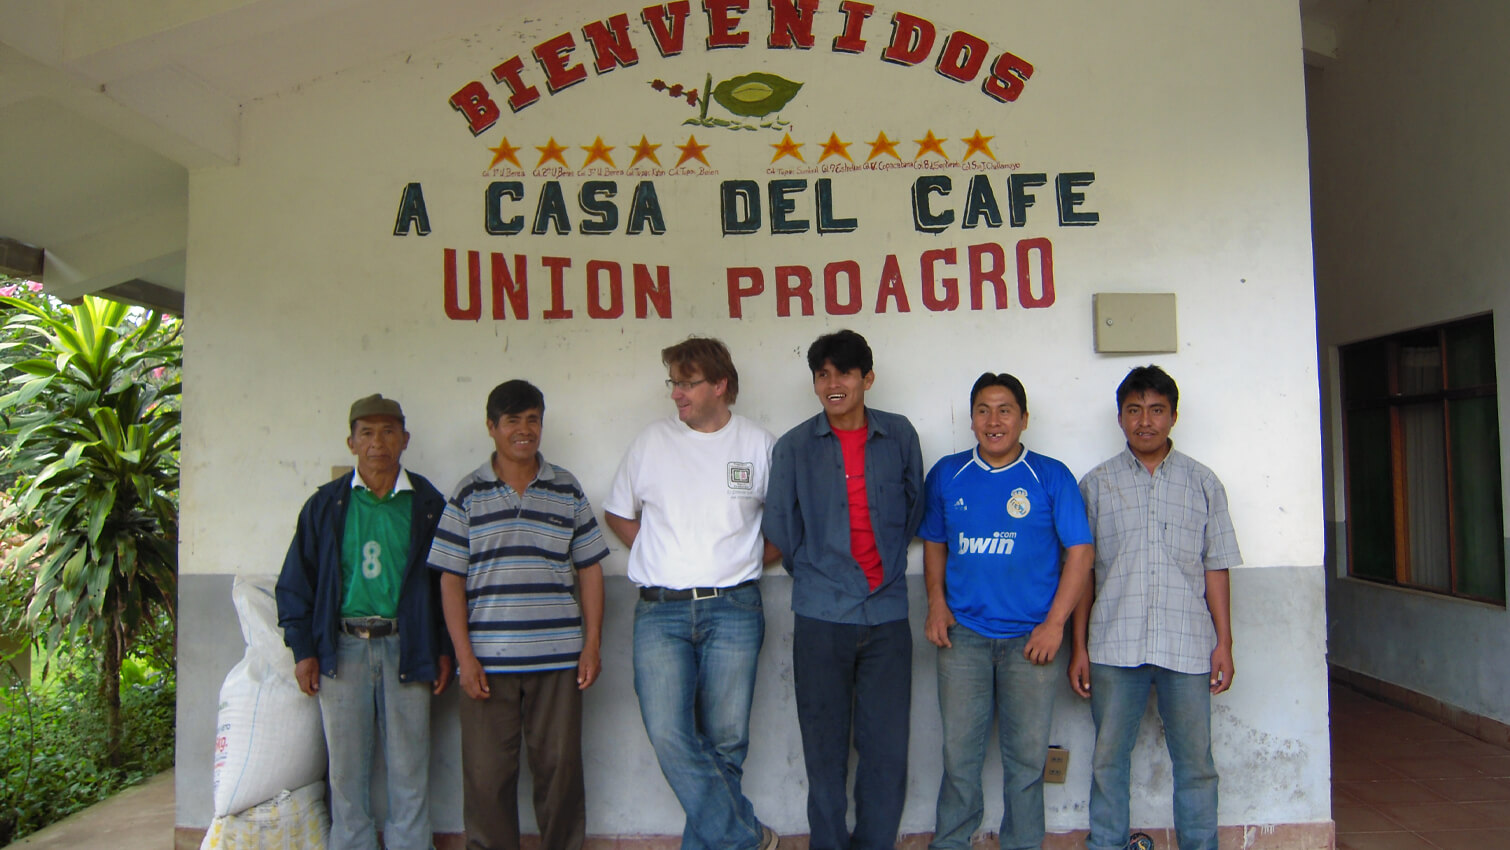 Producteurs boliviens cafÃ© coopÃ©rative UNION PRO AGRO arabica 250g